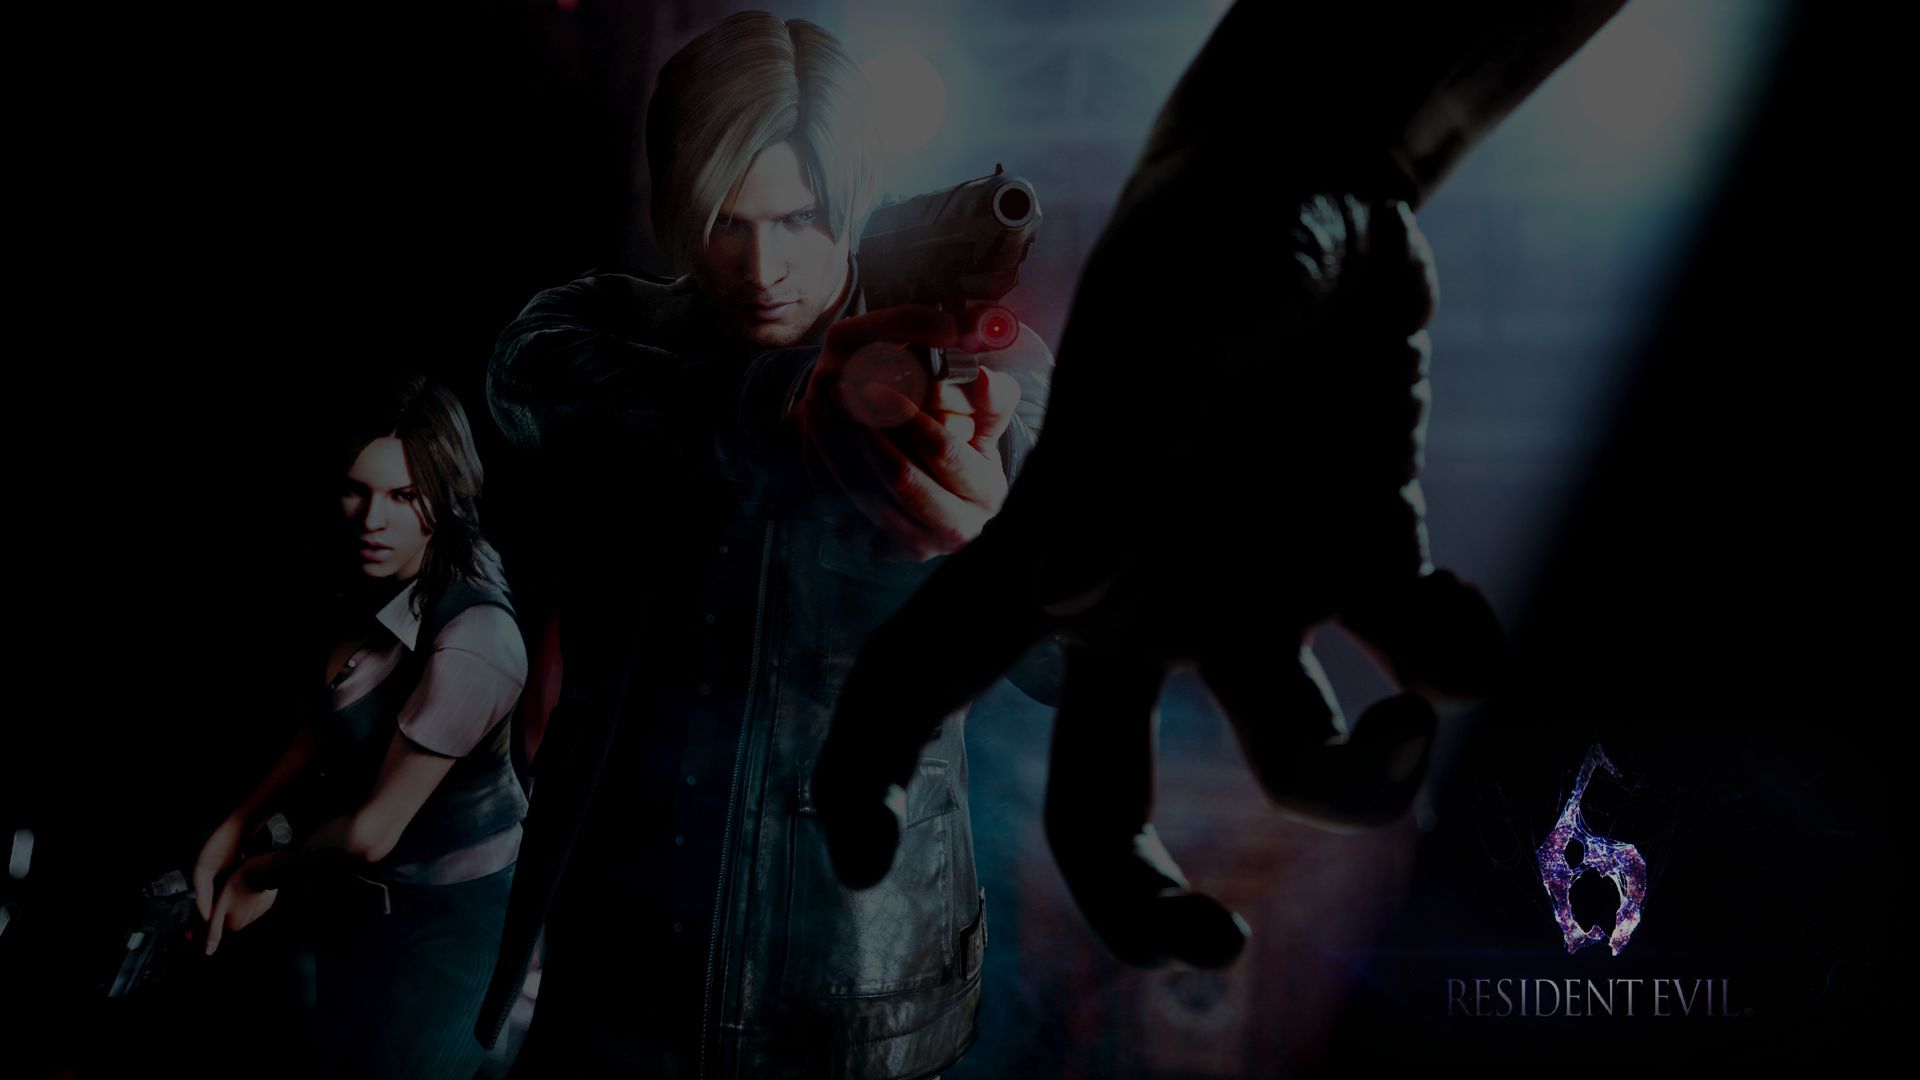 Download mobile wallpaper Resident Evil, Video Game, Resident Evil 6 for free.